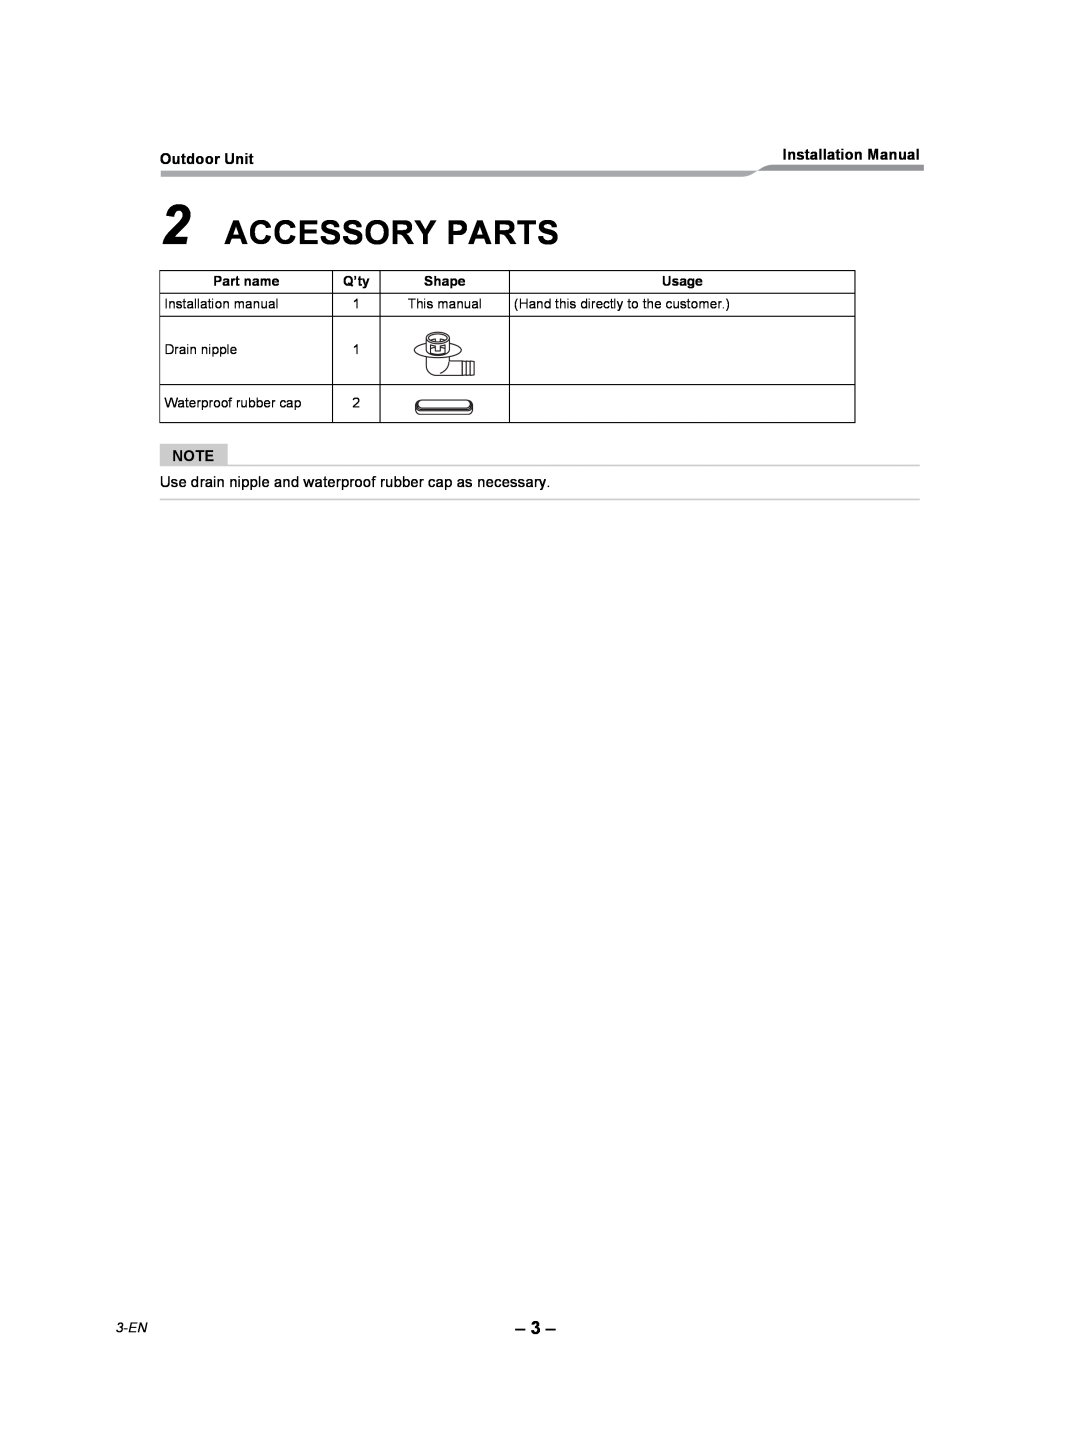 Toshiba RAV-SP180AT2-UL installation manual Accessory Parts, 3-EN 